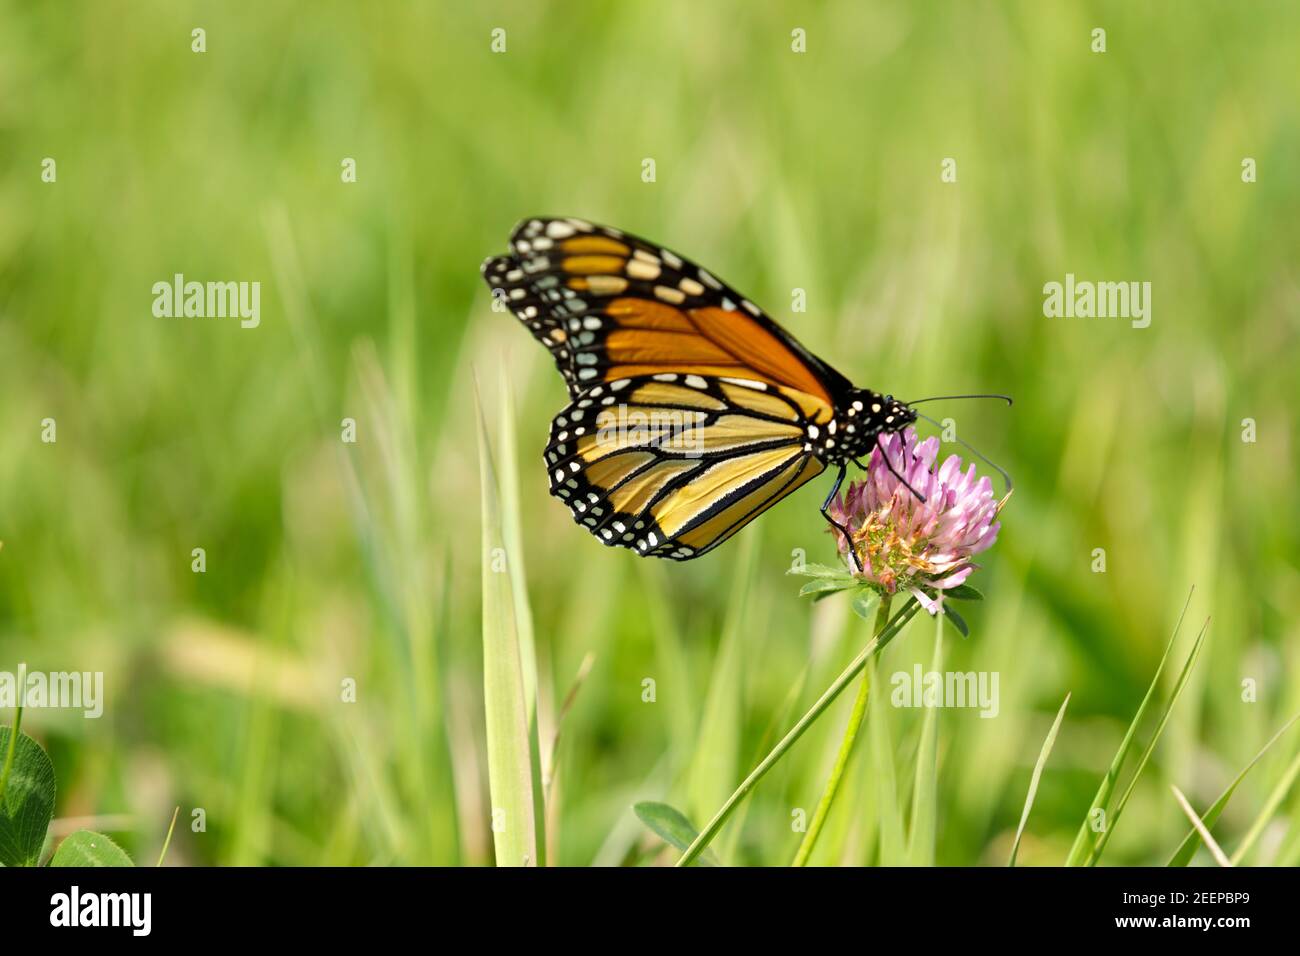 Monarque papillon ( Danaus plexippus) se nourrissant de la fleur de trèfle. Les monarques sont des papillons de moulakaded (sous-famille des Danainae) de la famille des Nymphalidae. Banque D'Images